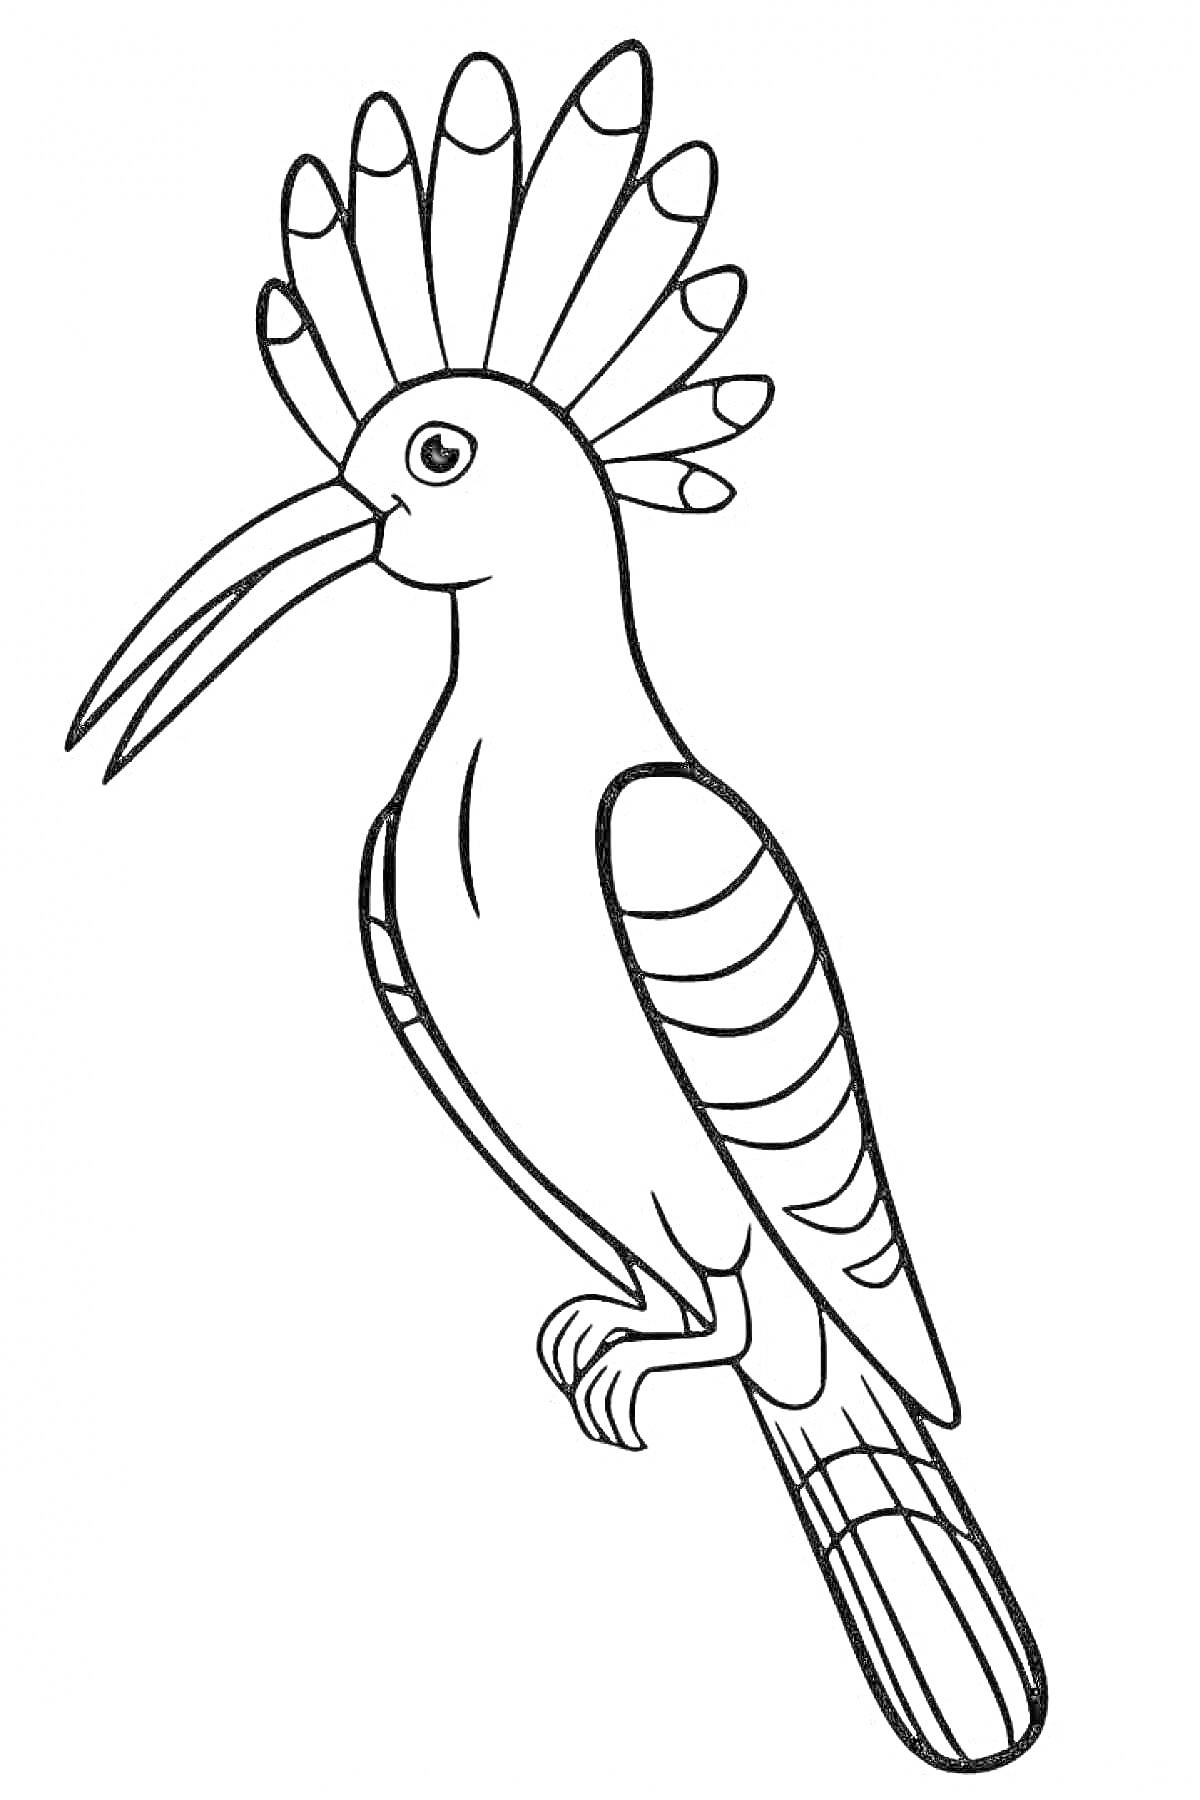 Раскраска Раскраска с изображением птицы удод, сидящей на ветке